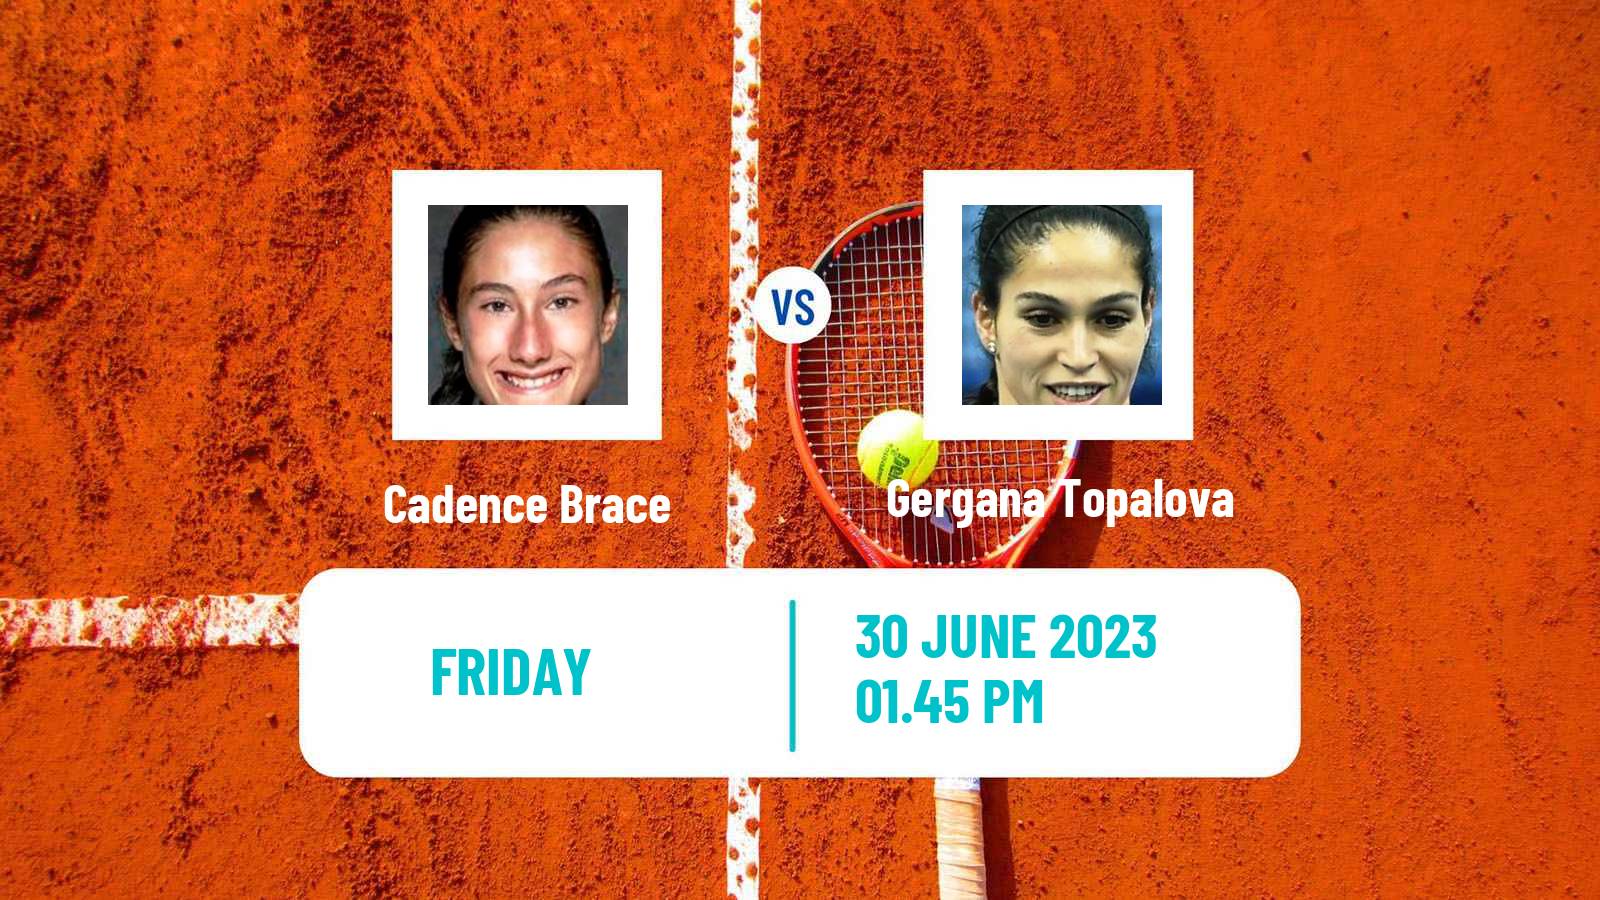 Tennis ITF W25 Santo Domingo 4 Women Cadence Brace - Gergana Topalova